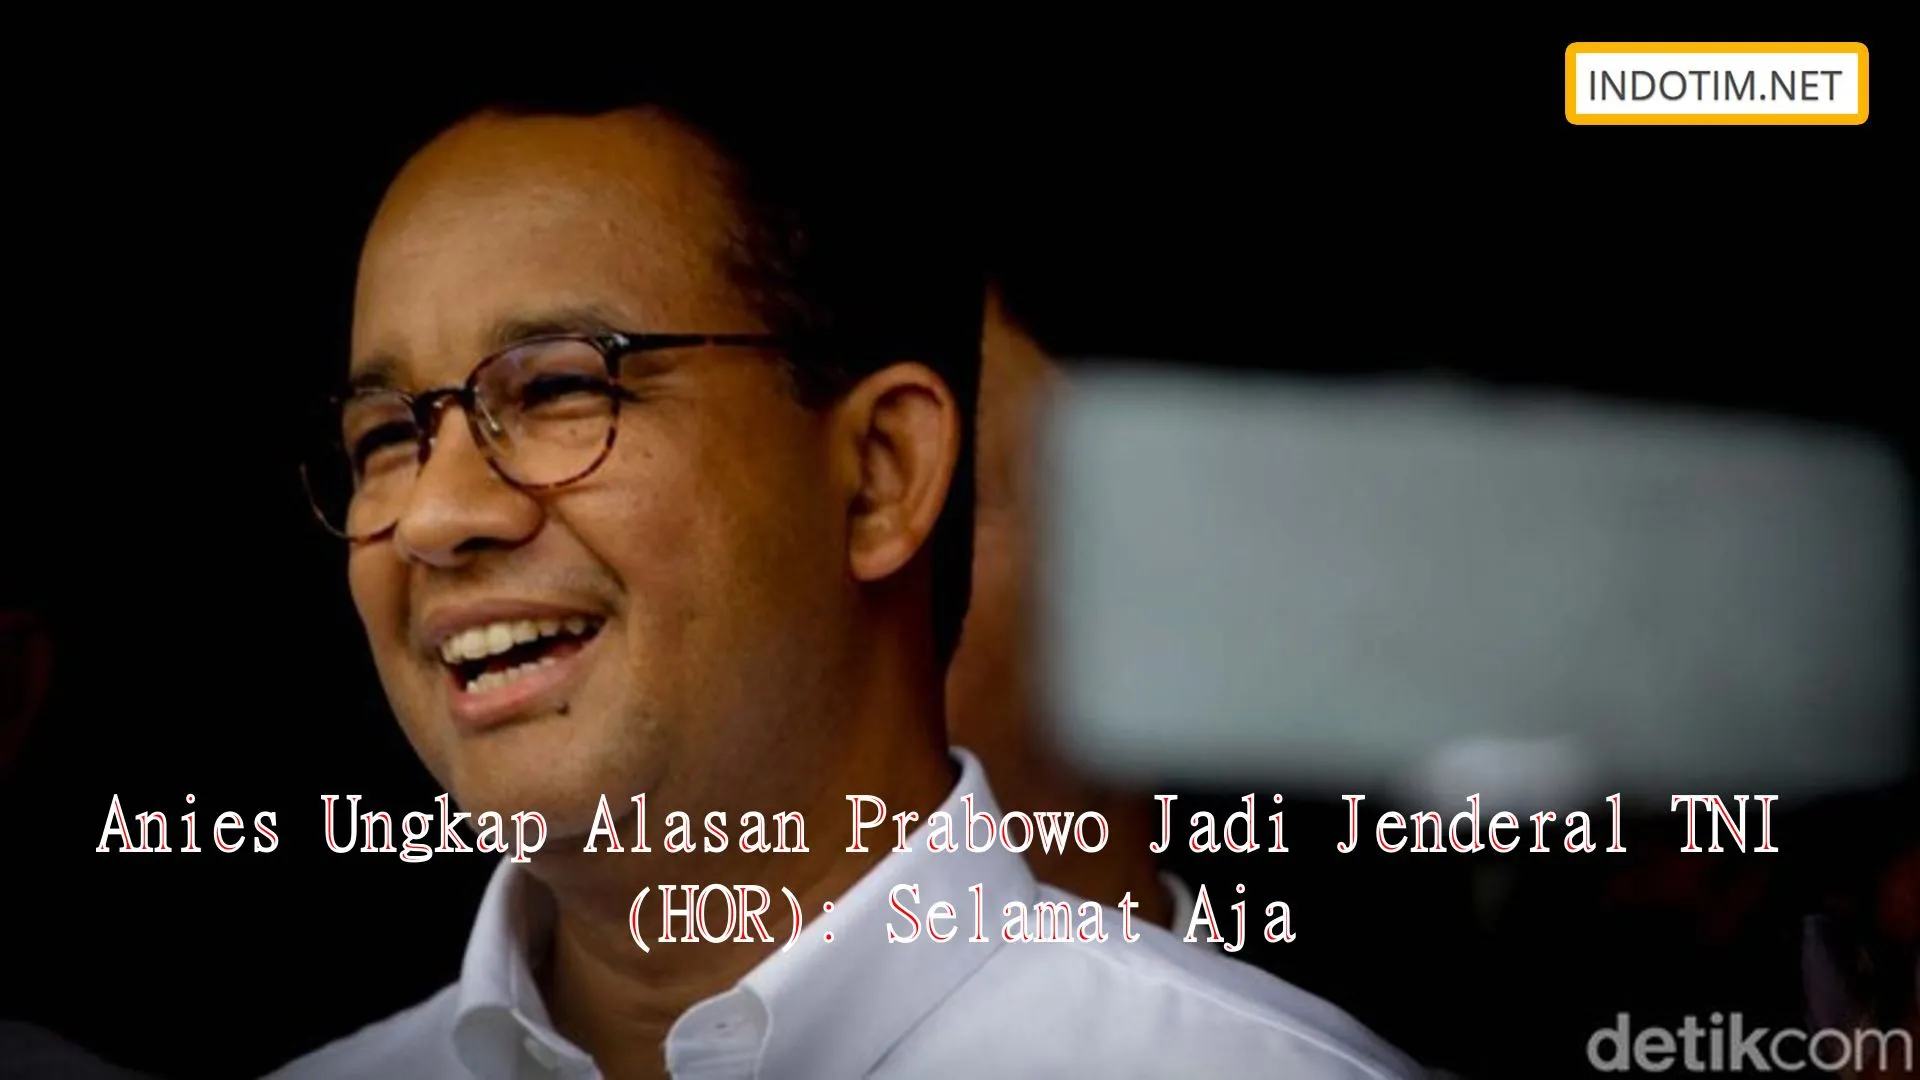 Anies Ungkap Alasan Prabowo Jadi Jenderal TNI (HOR): Selamat Aja